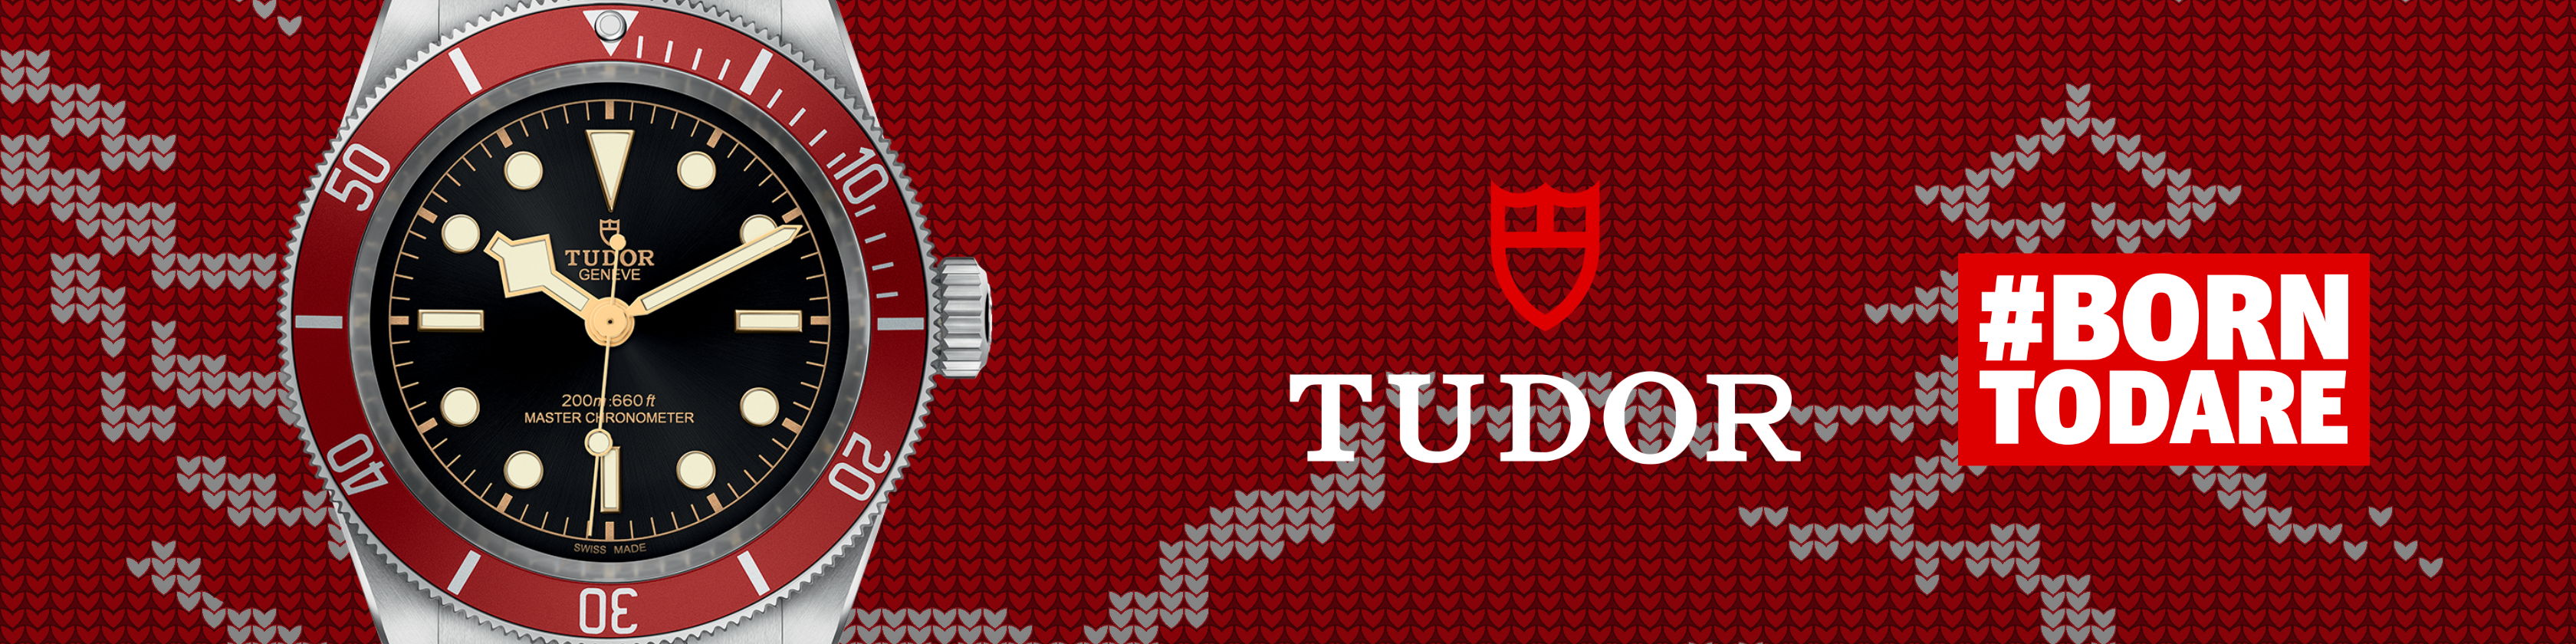 Tudor banner (1)